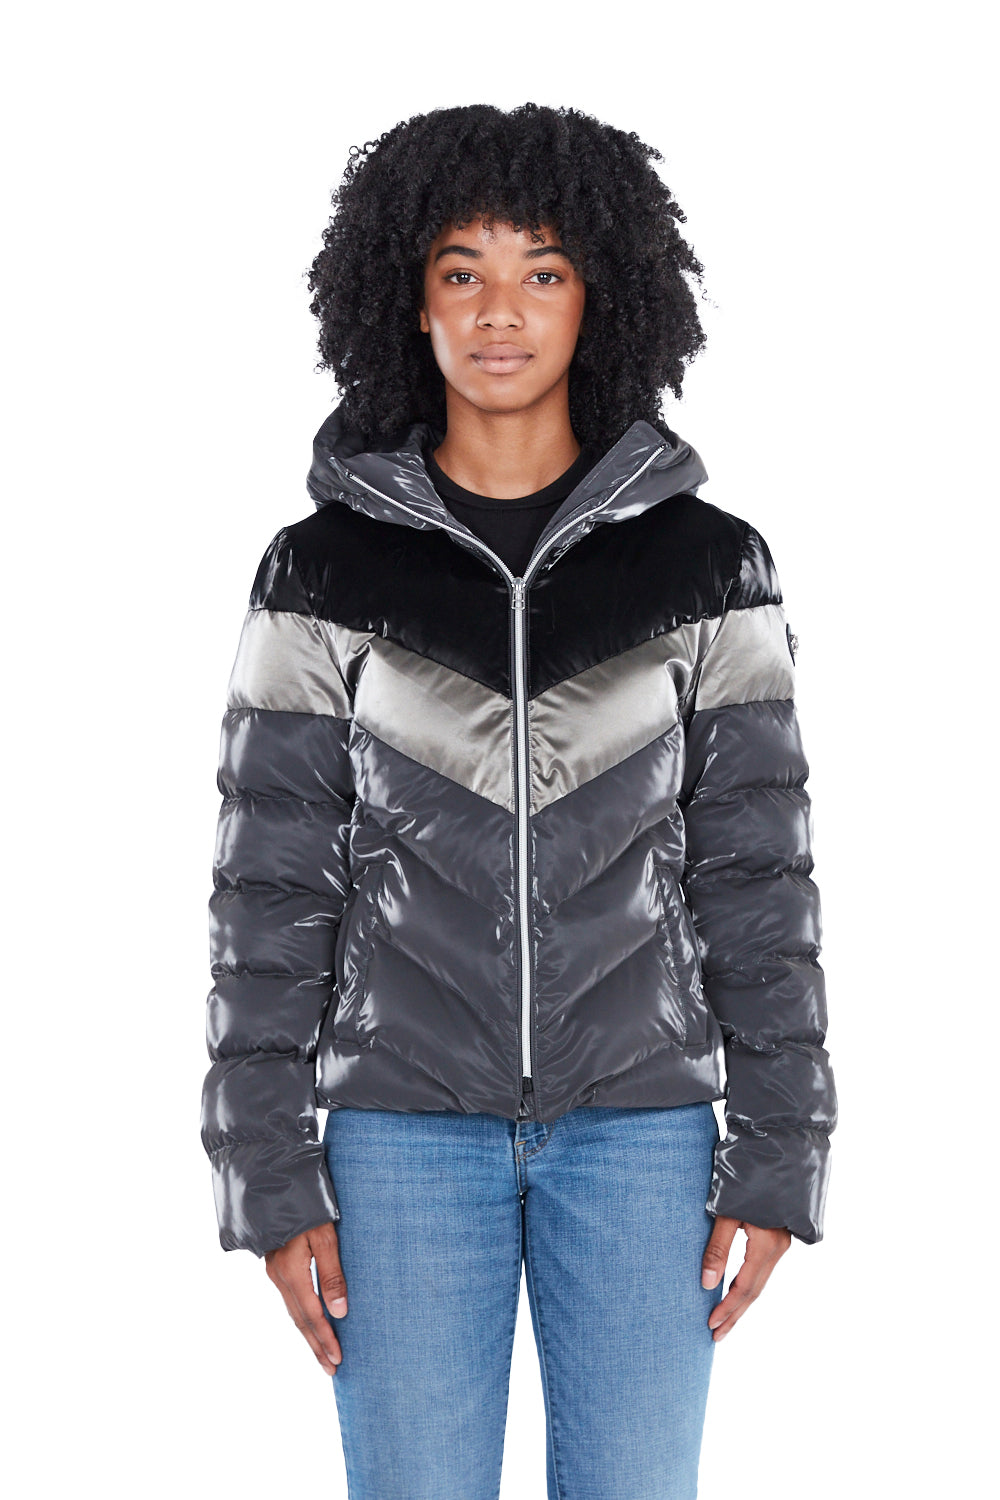 Woodpecker Women's Robin Winter coat. High-end Canadian designer winter coat for women in shiny 